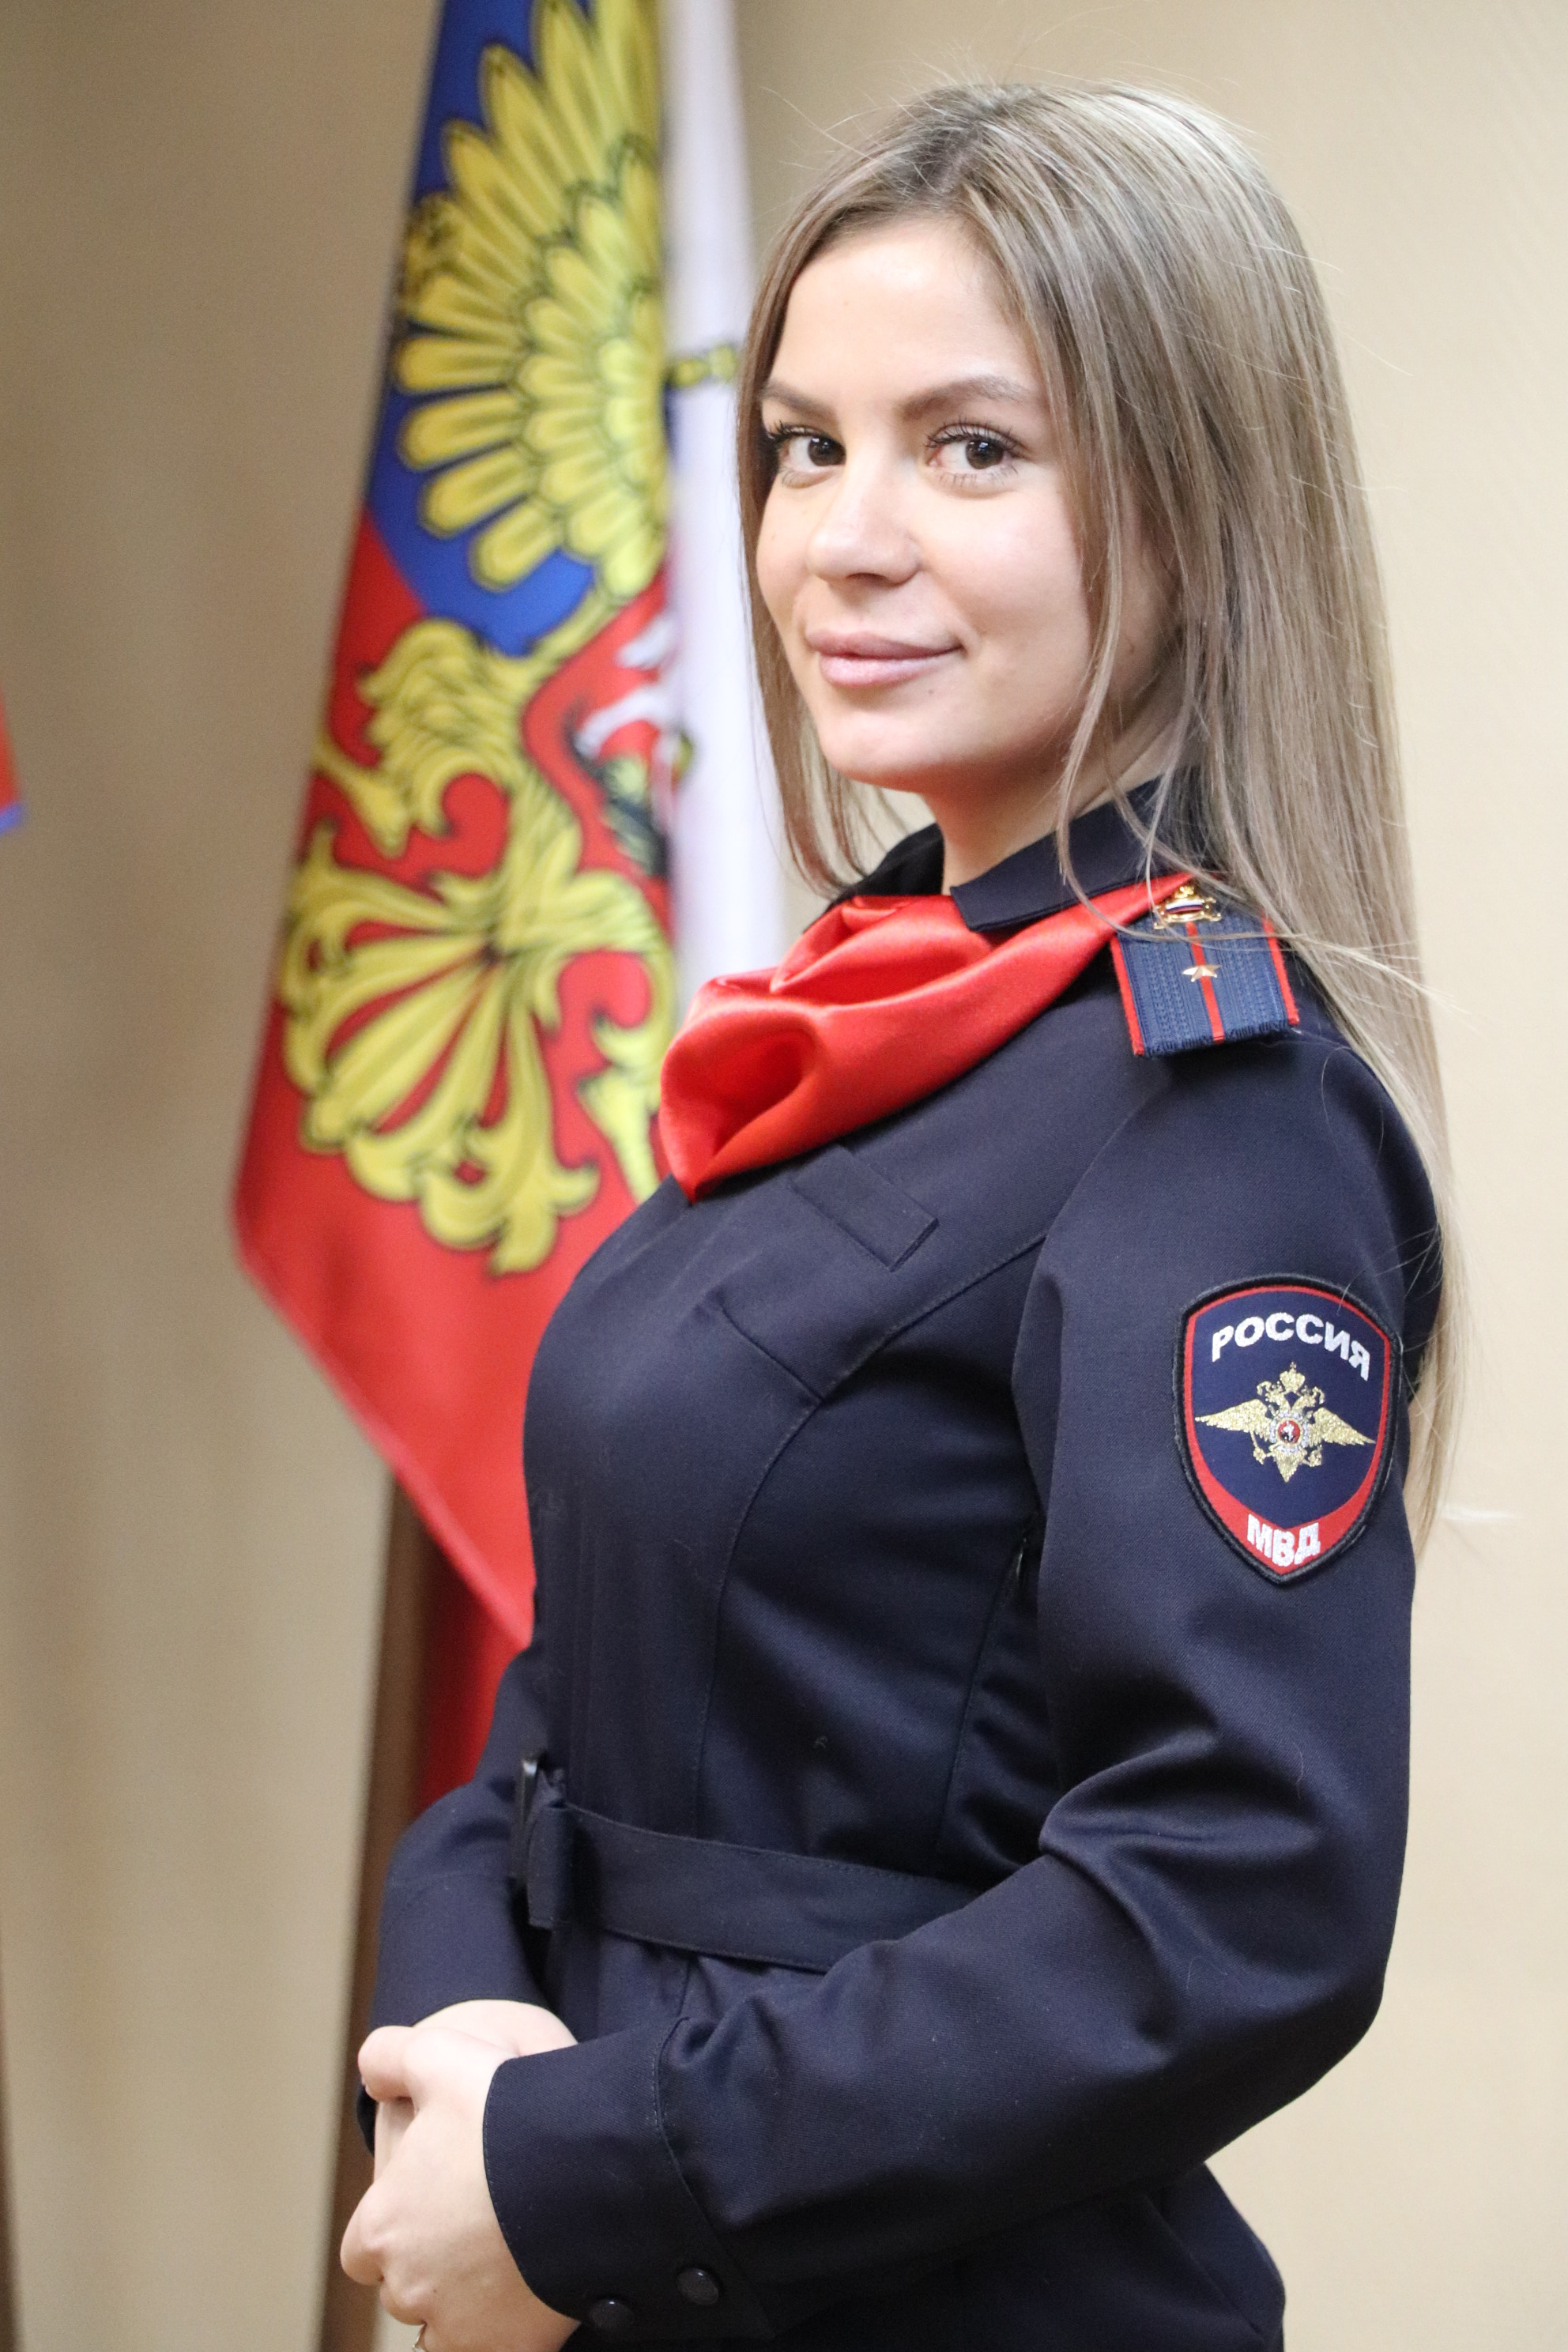 Норильск на конкурсе представила Татьяна Сидоренко